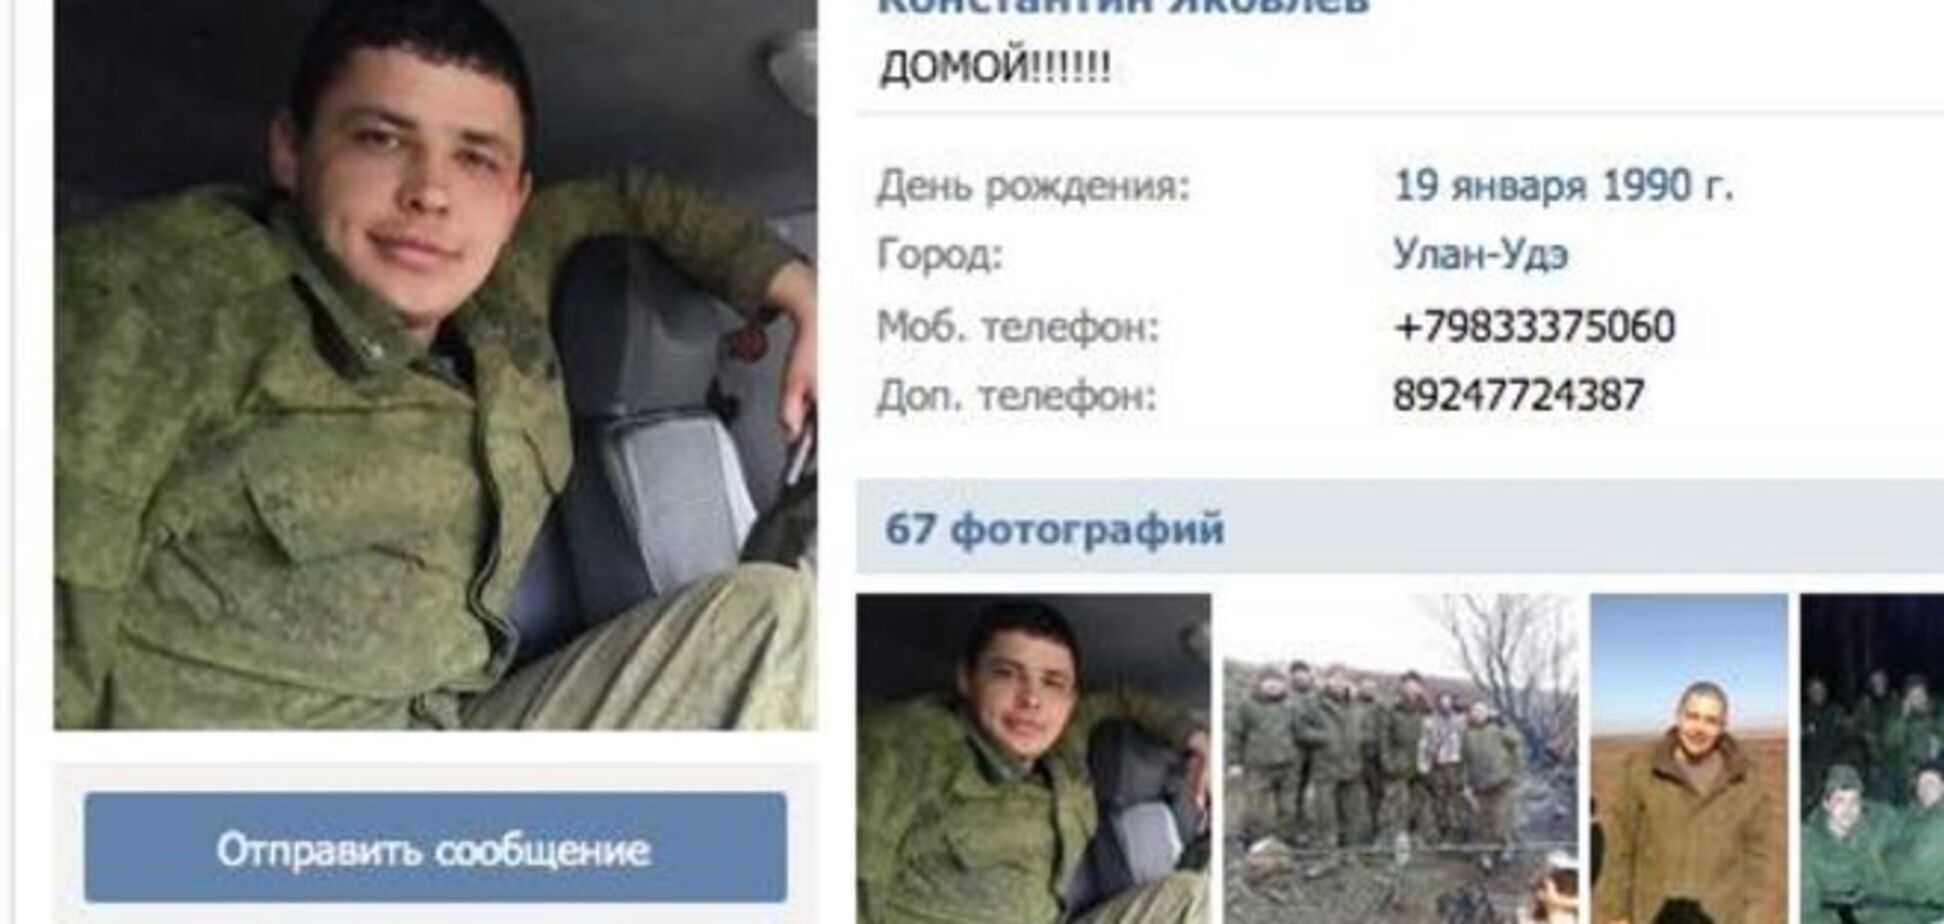 Российские танкисты едут домой? А откуда едут?